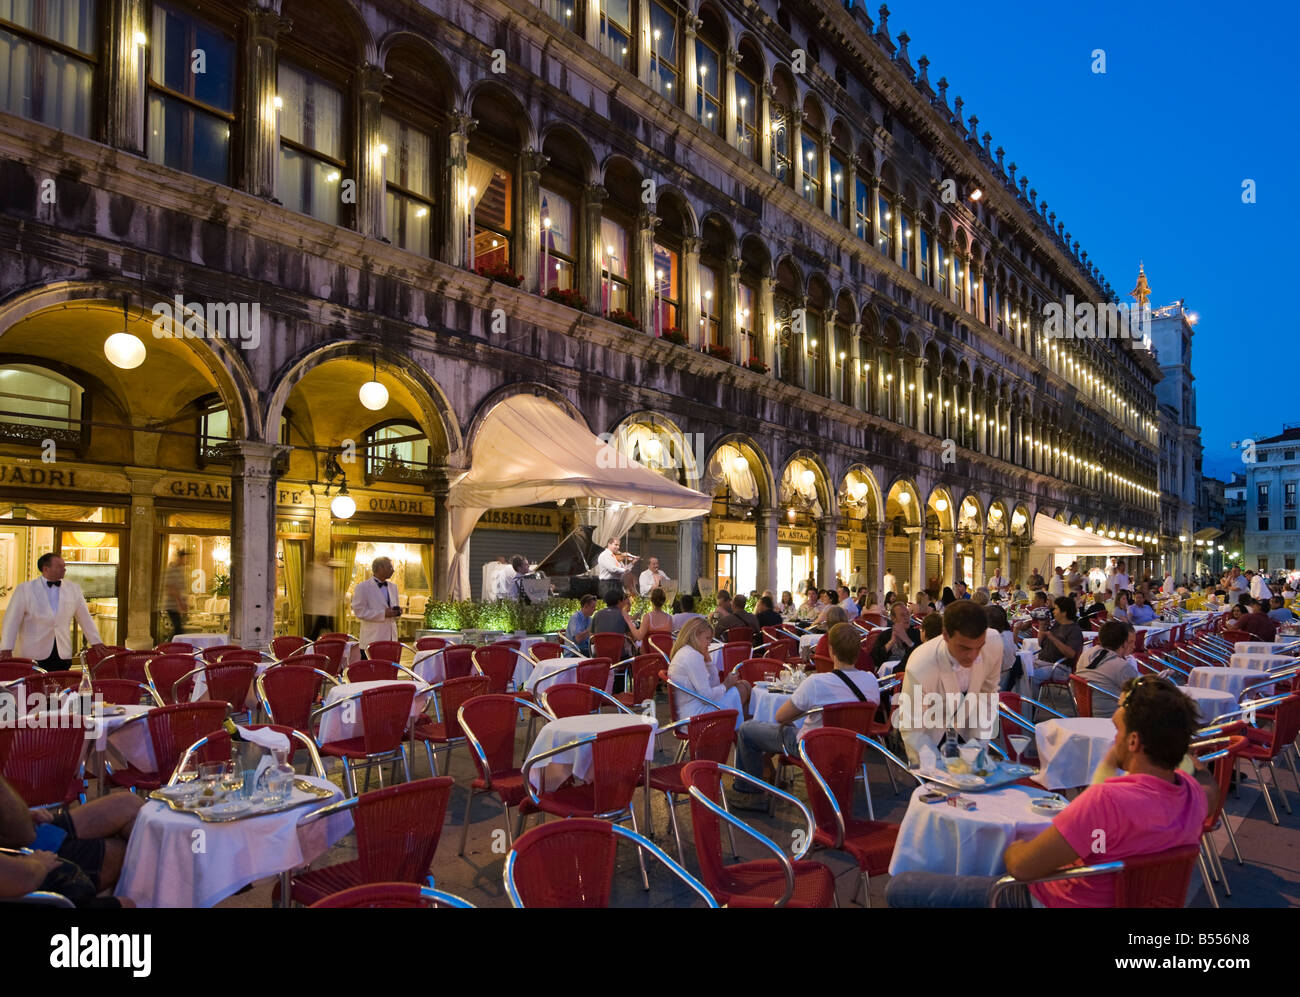 Le restaurant Grand Café quadri dans la Piazza San Marco dans la nuit, Venise, Vénétie, Italie Banque D'Images